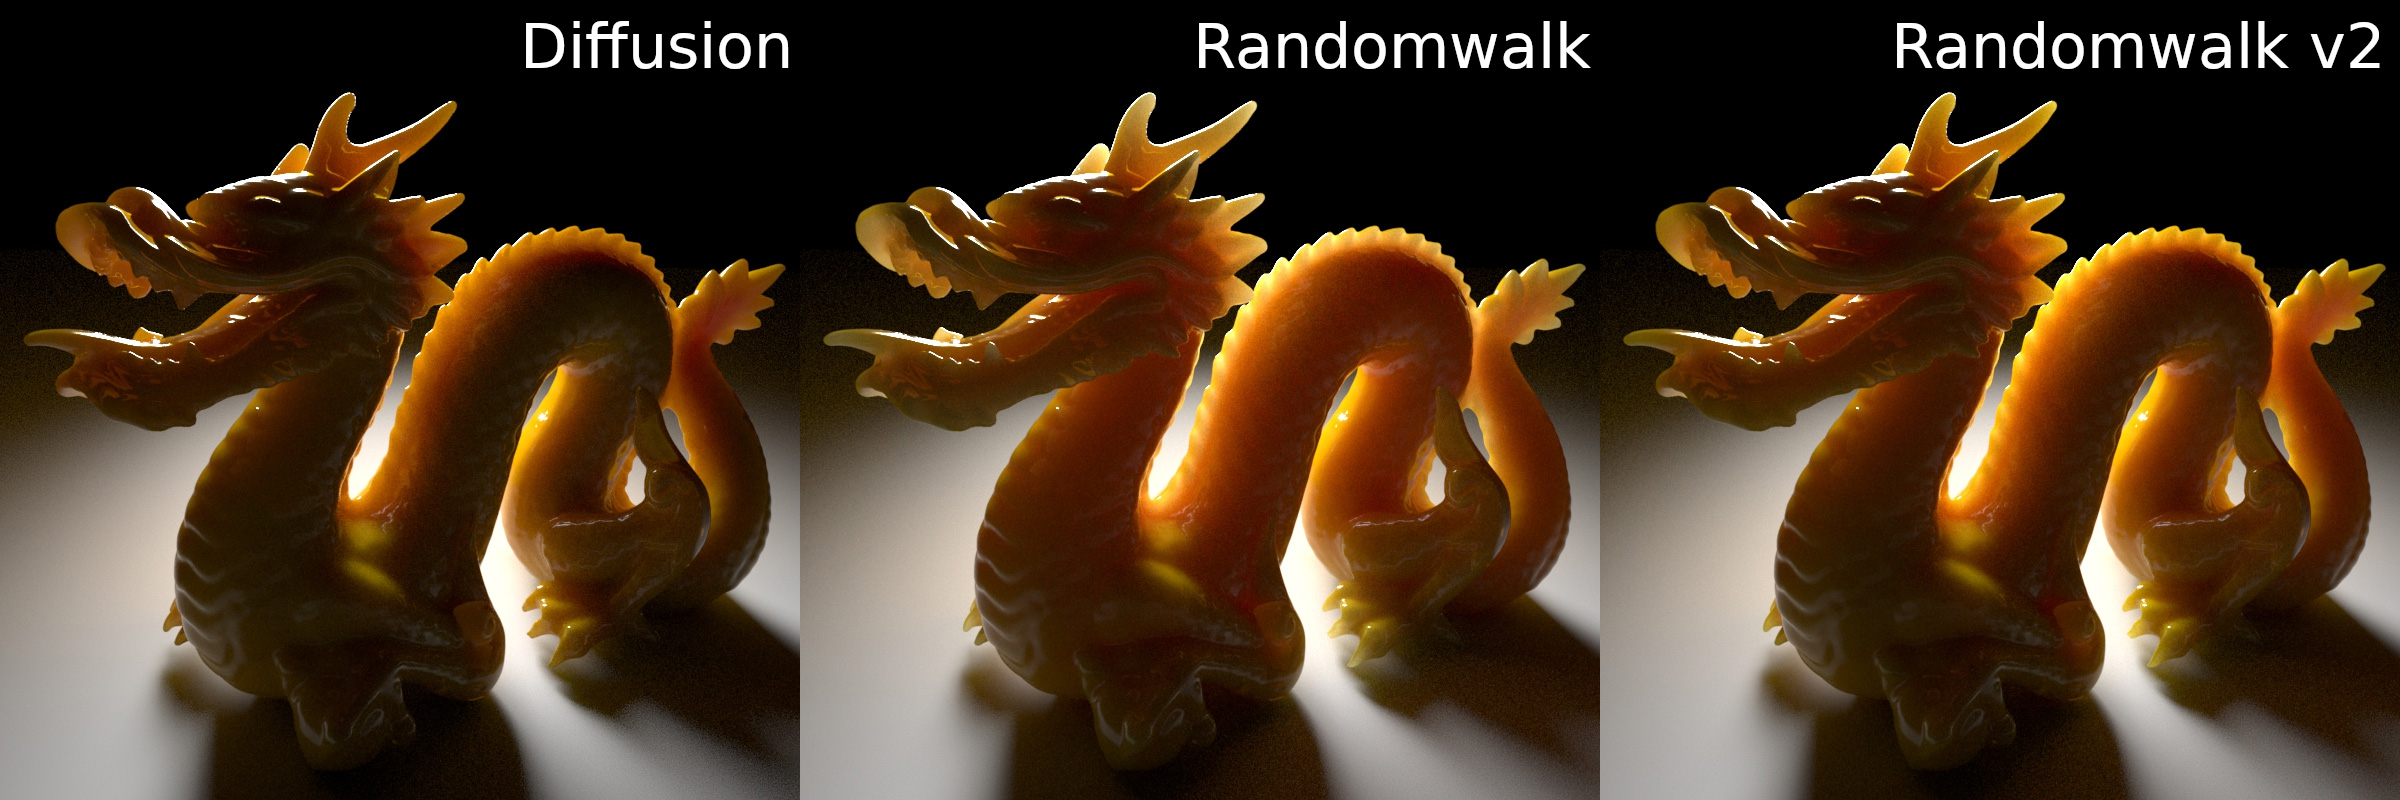 Diffusion、Randomwalk、Randomwalk v2